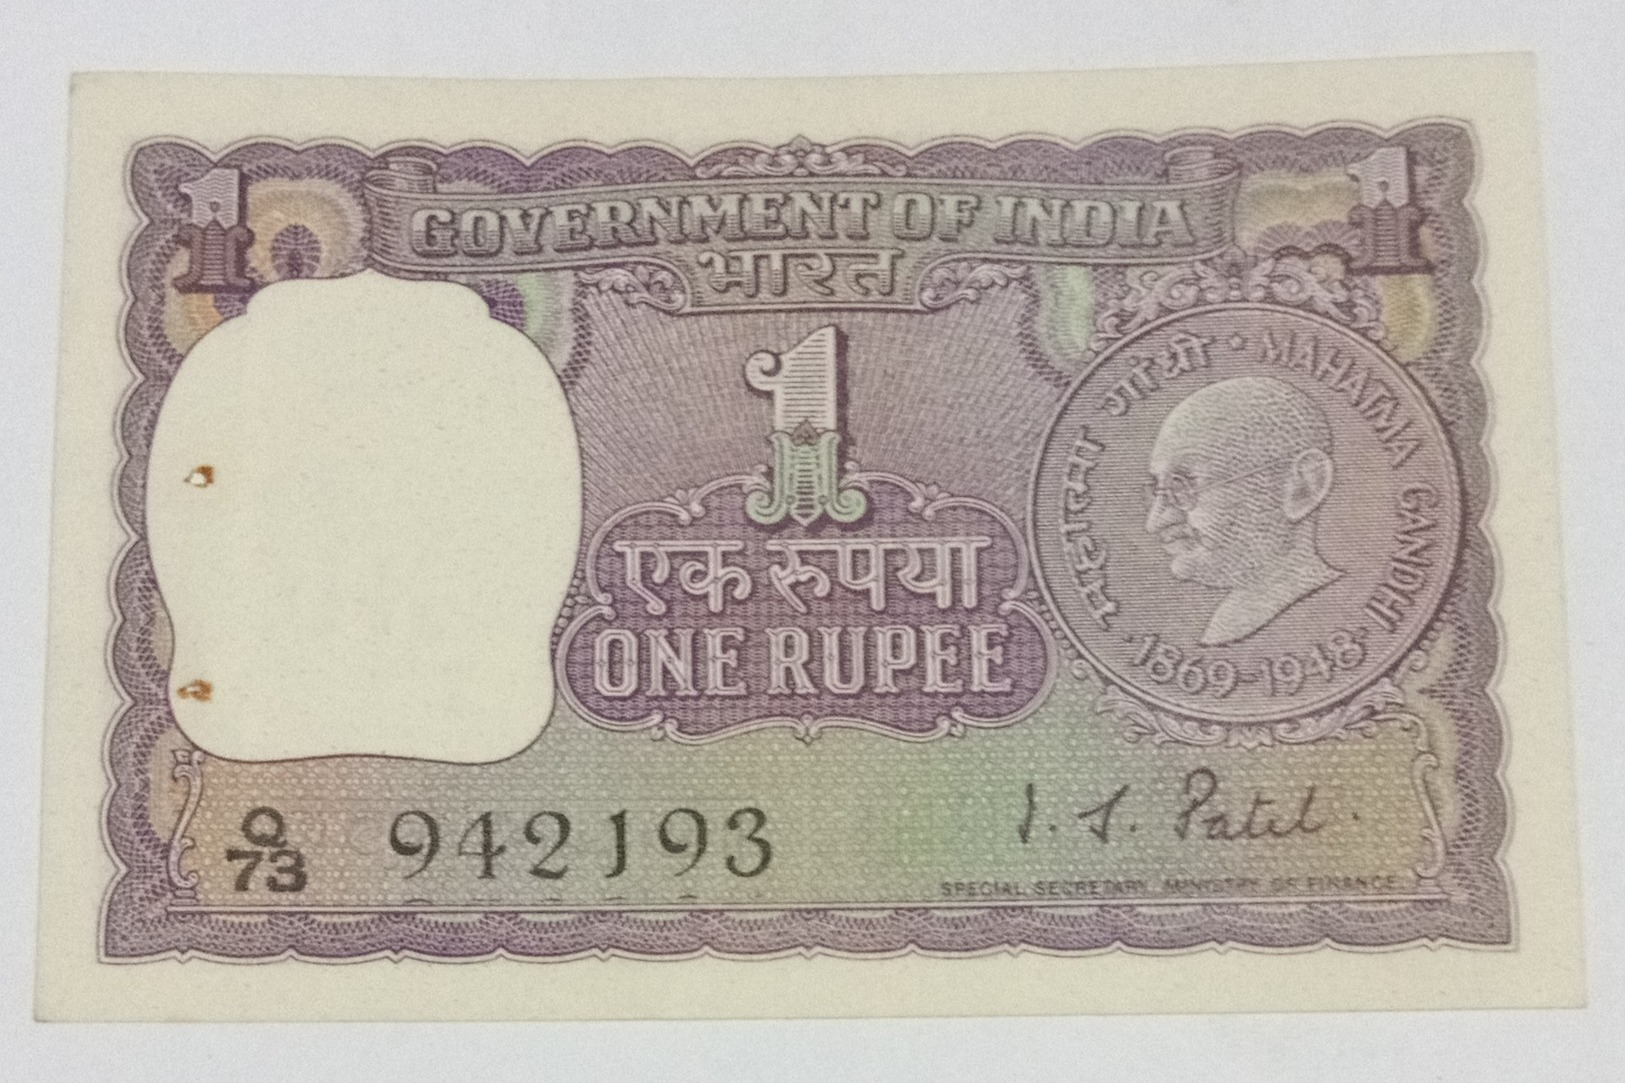 Gandhi 1969..inde India Note...942193 - India